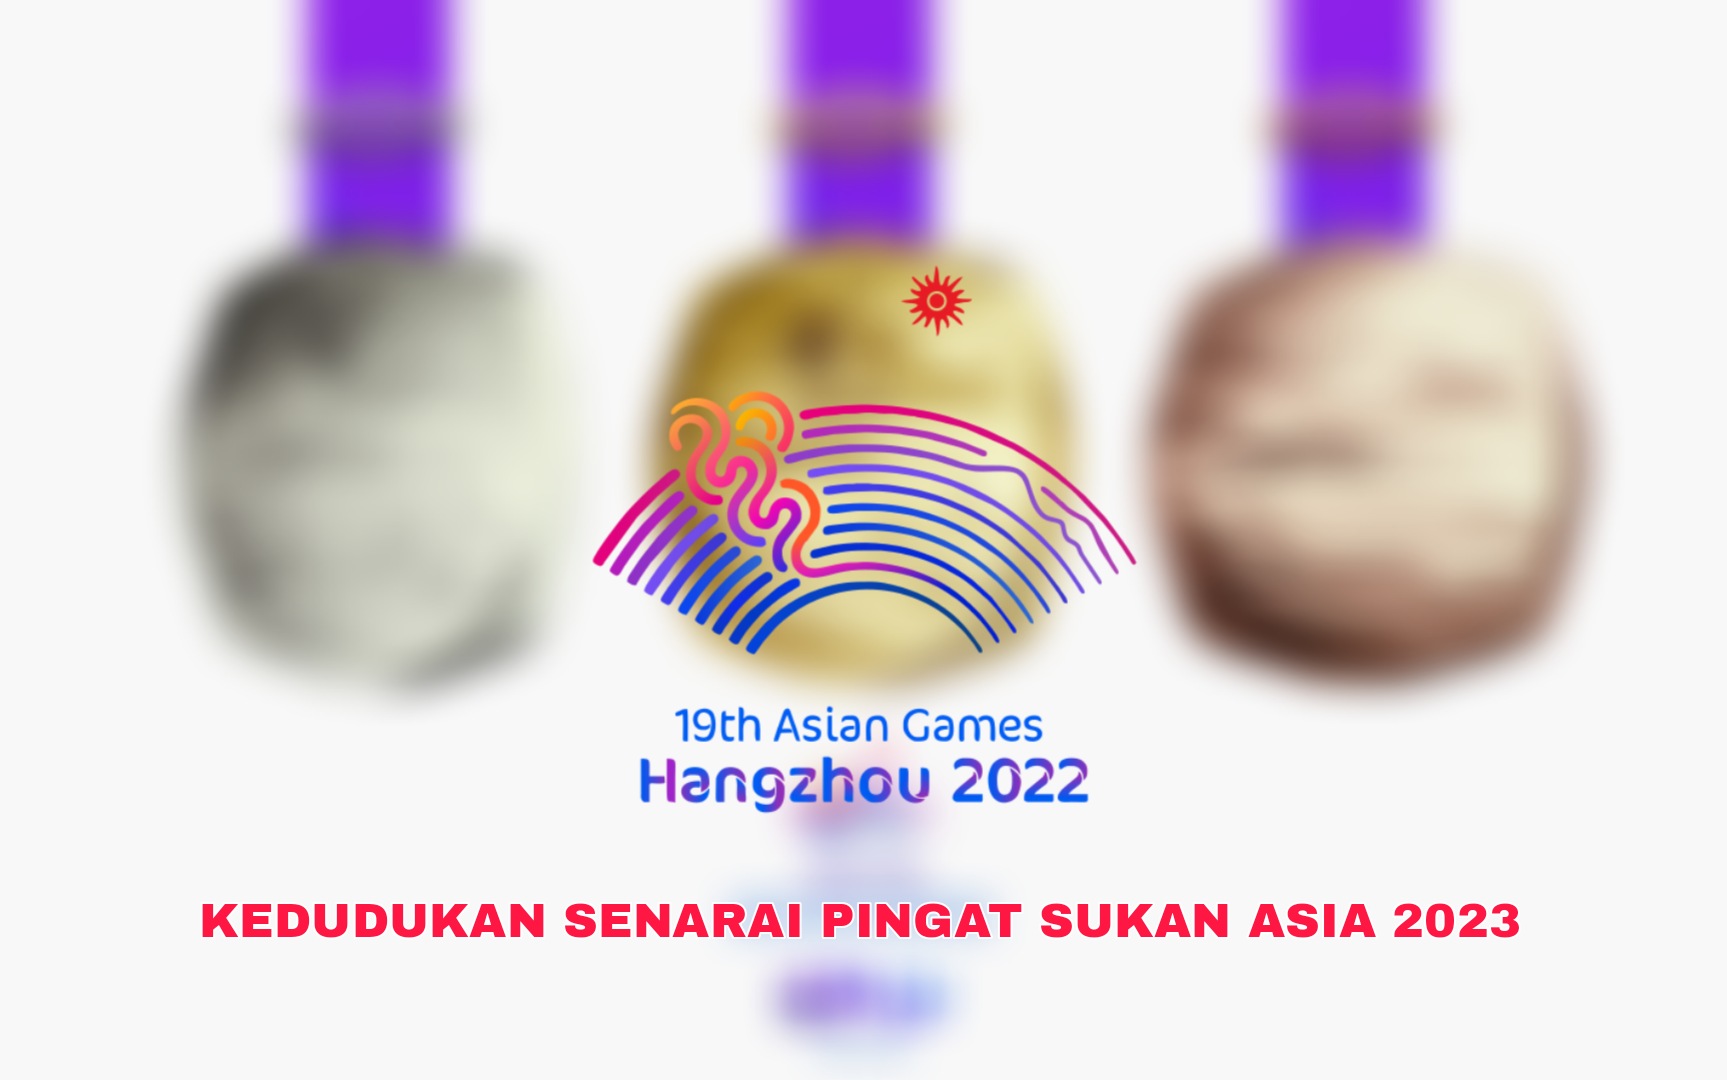 Kedudukan Senarai Pingat Sukan Asia 2023 (Emas Perak Gangsa)